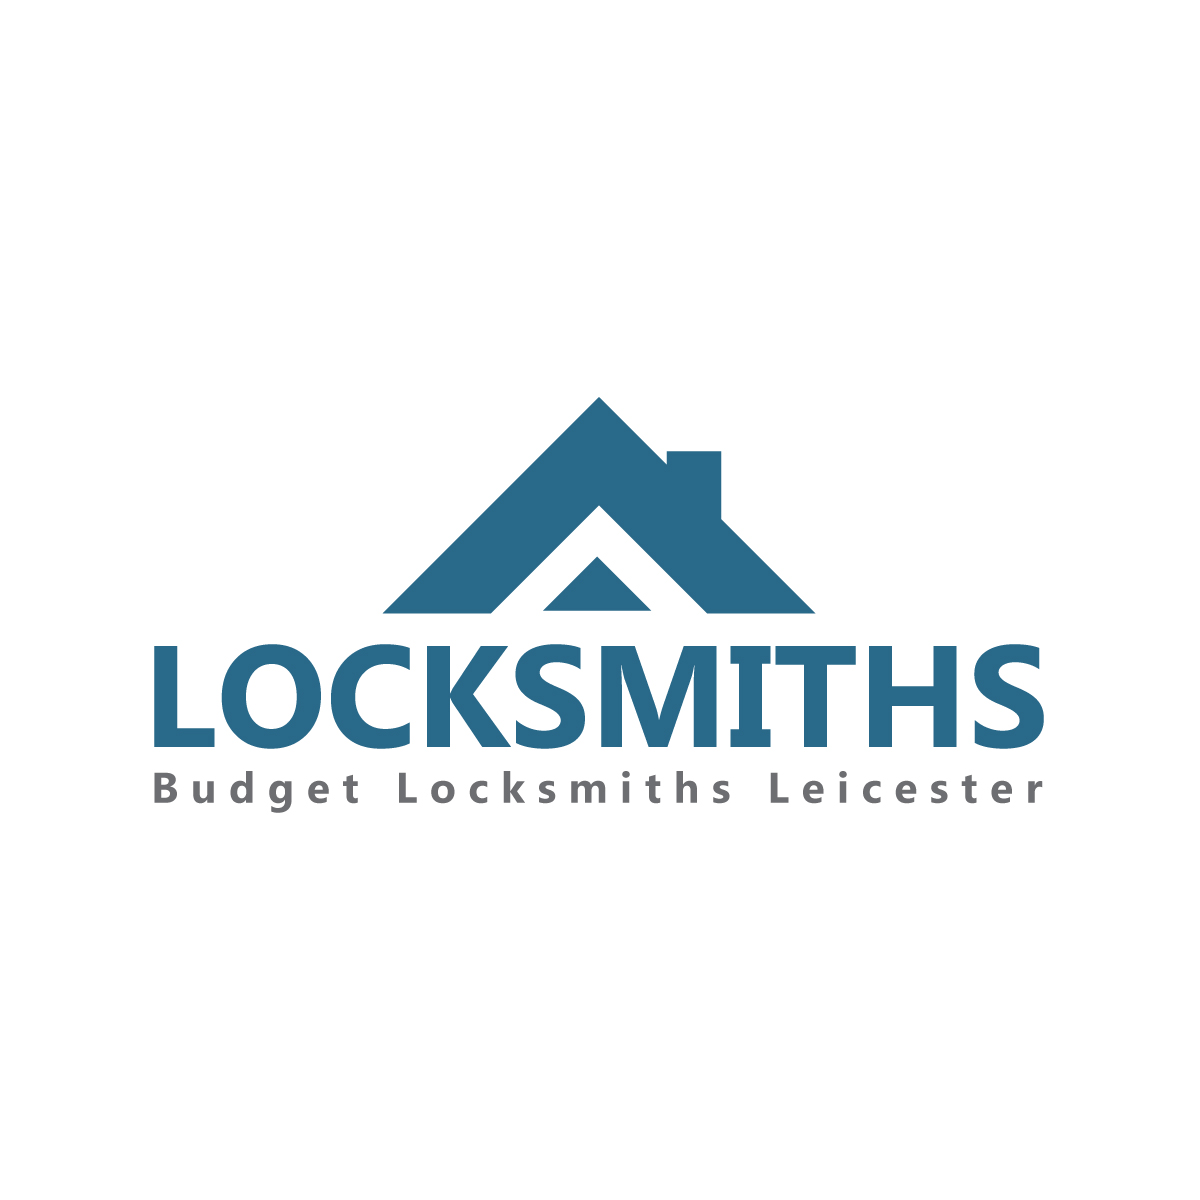 Budget Locksmiths Leicester